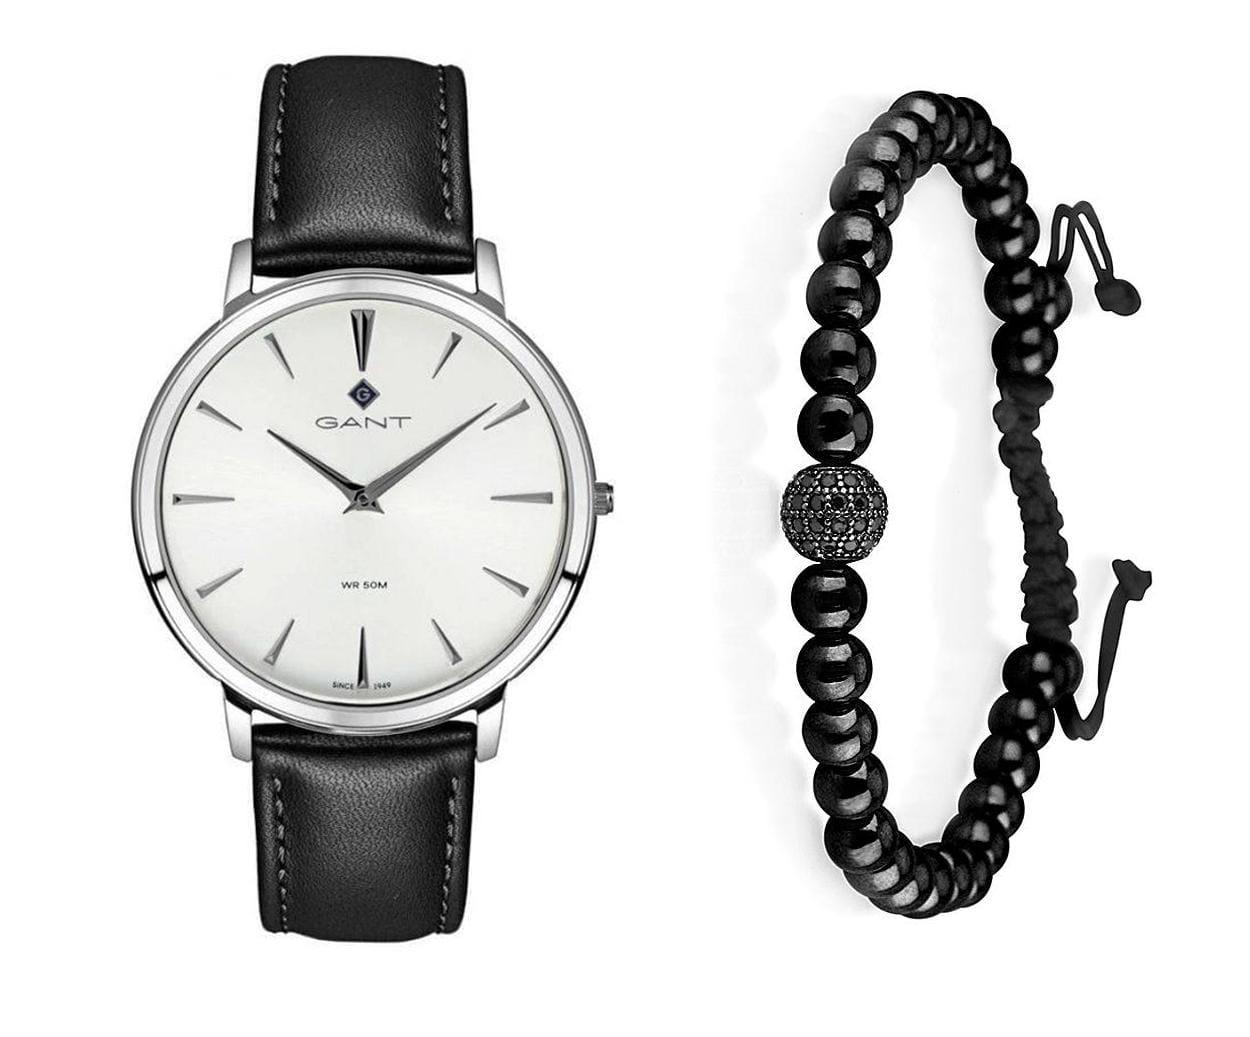 שעון יד אנלוגי לגבר gant g133002 גאנט עם צמיד כדורים שחור